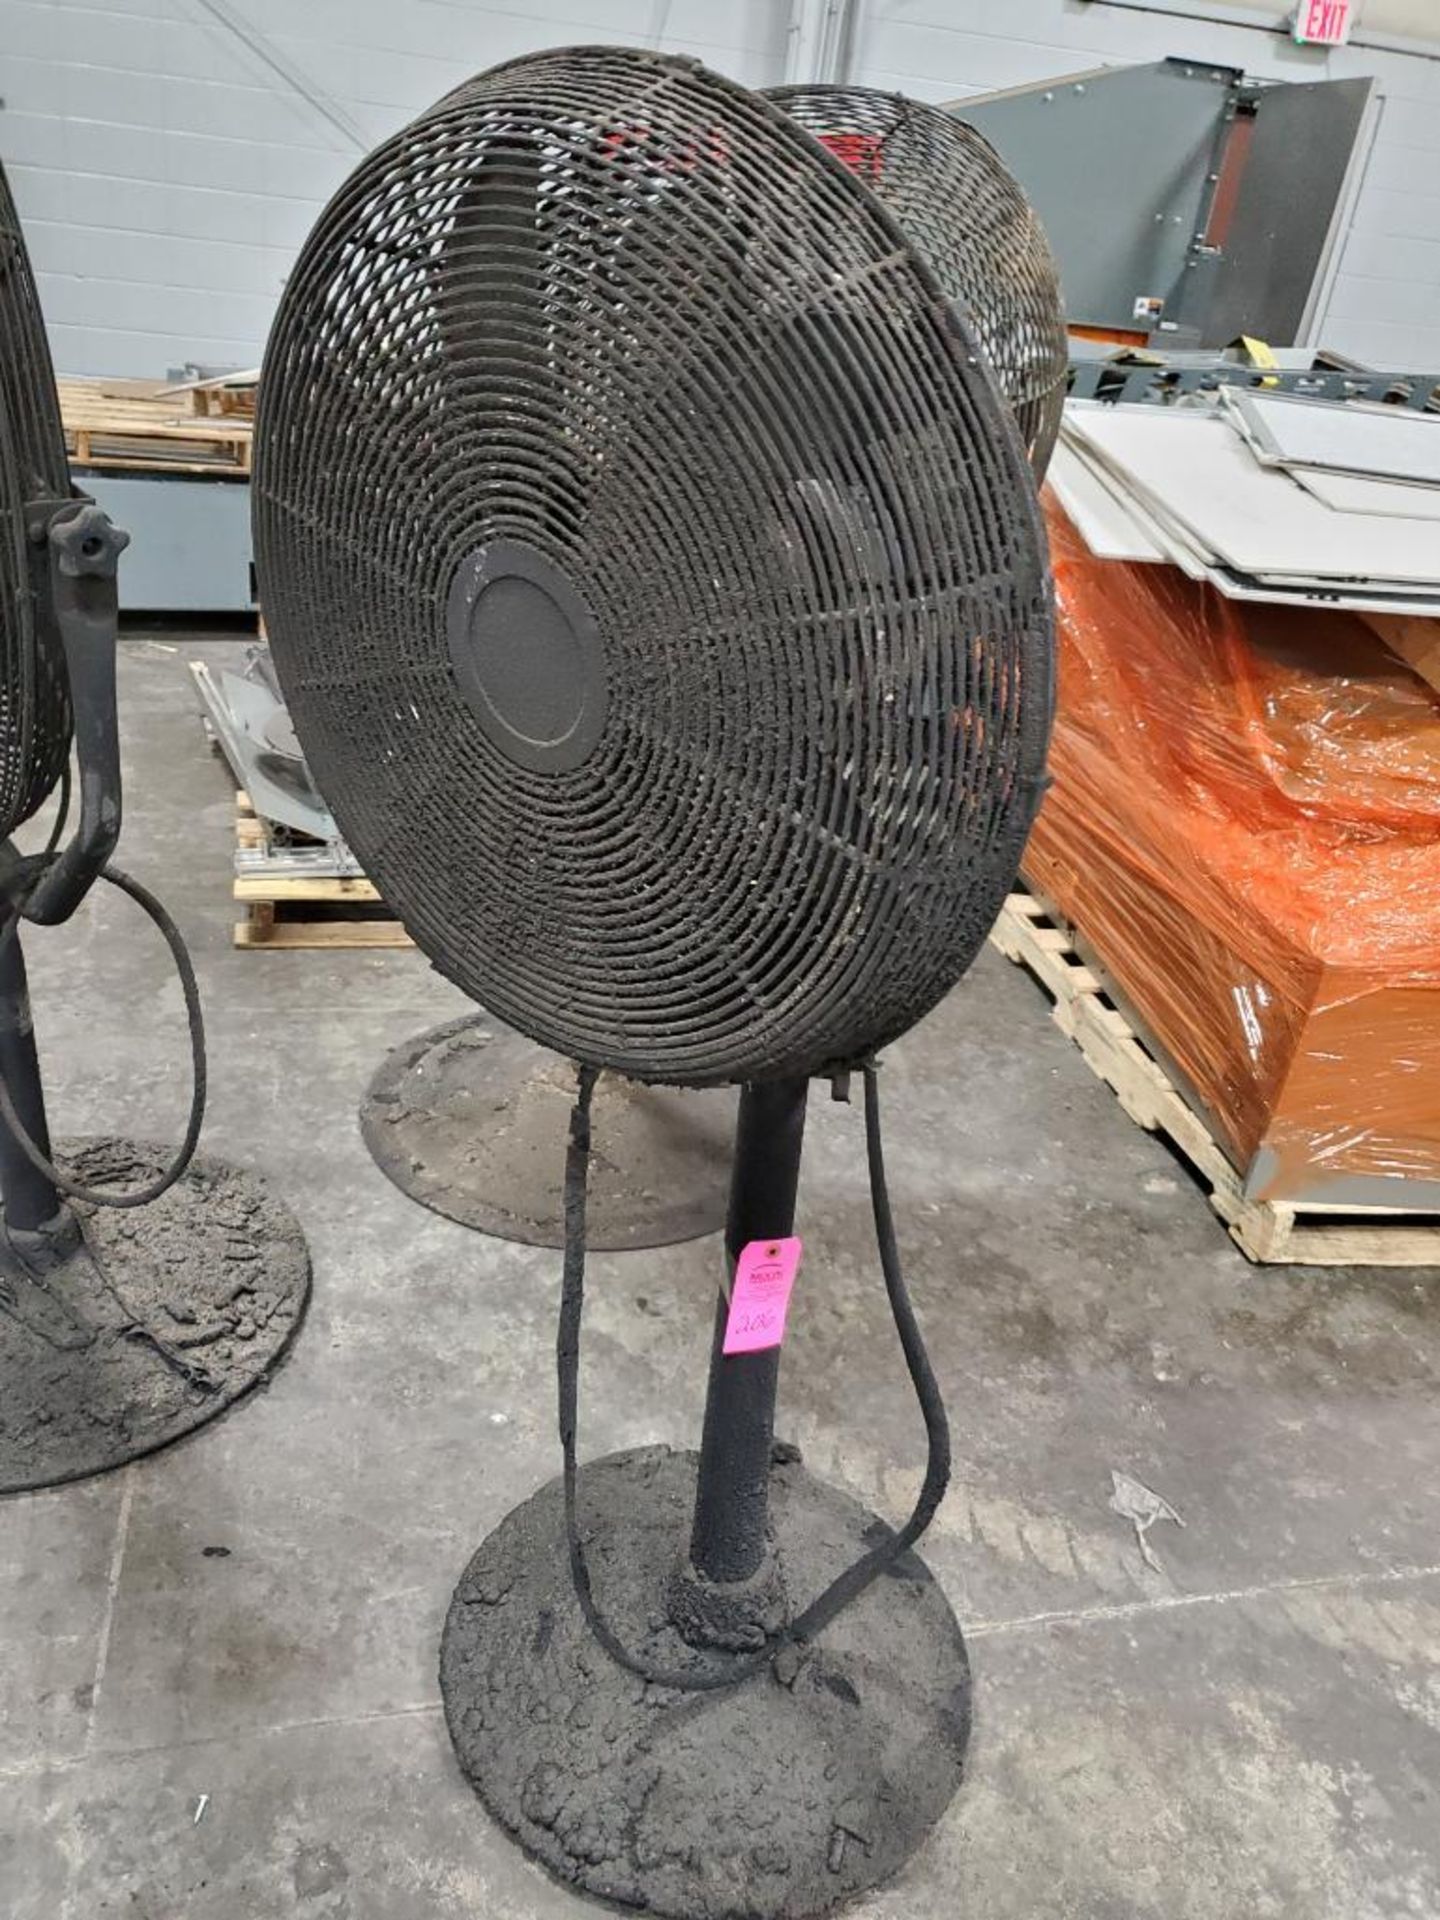 30in pedestal fan. 120v single phase.